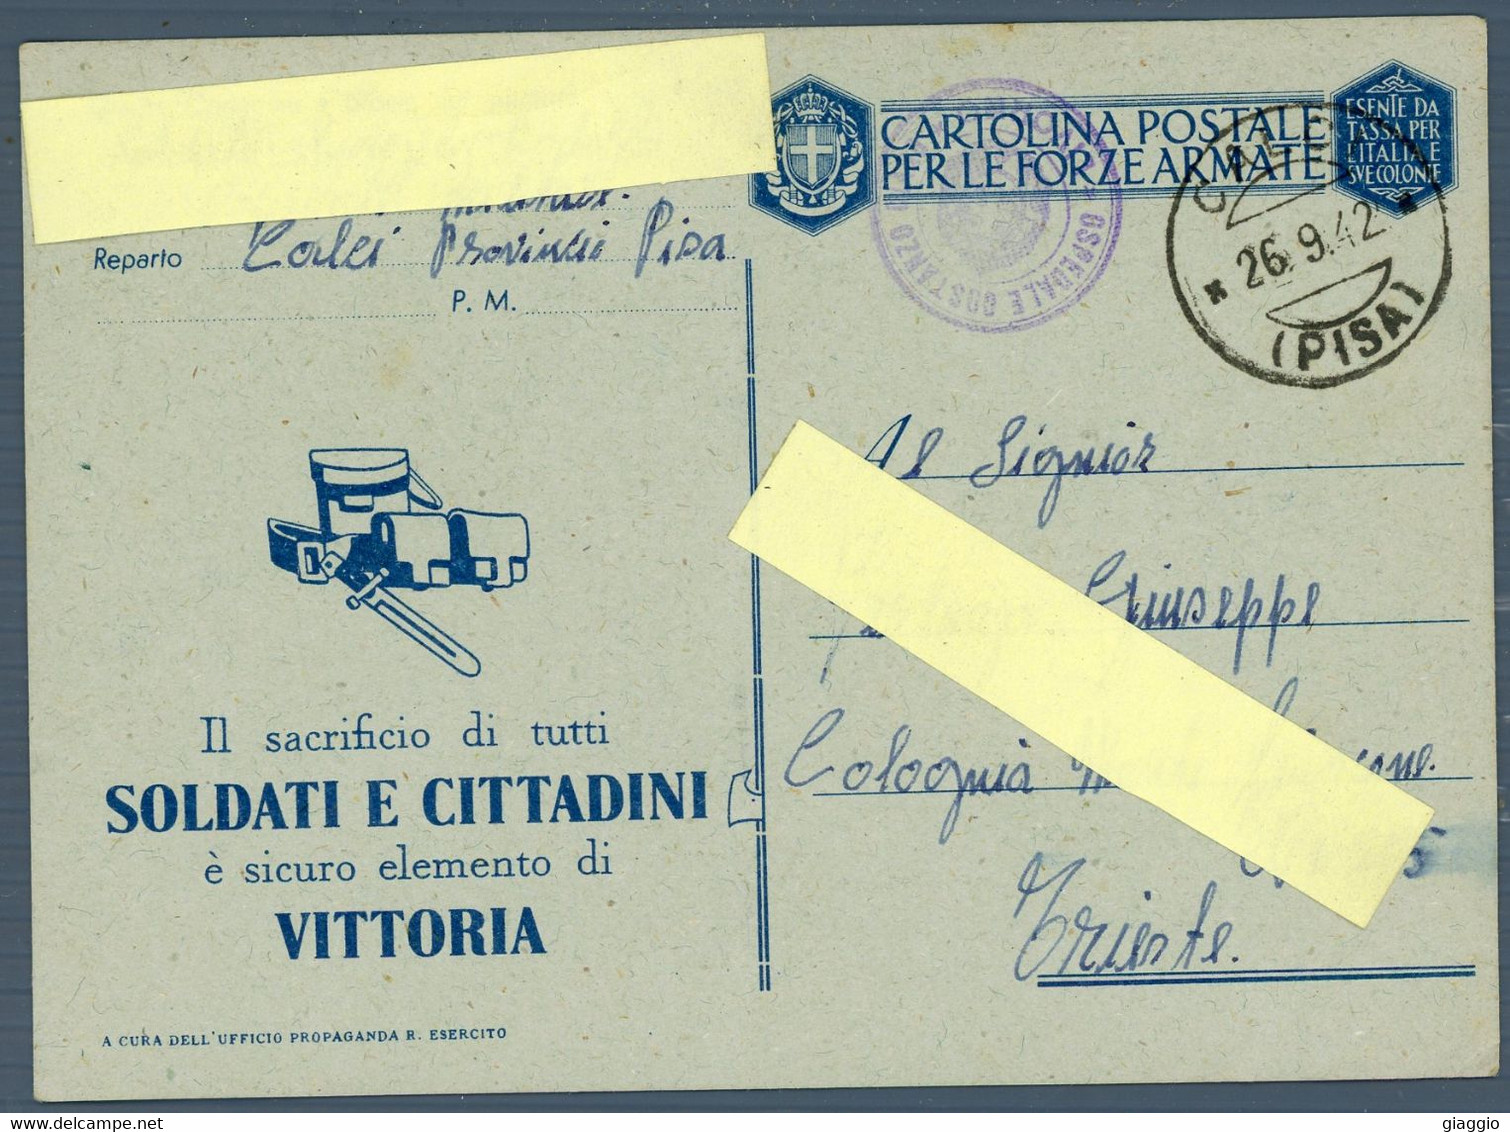 °°° Cartolina Postale N. 4943 - Per Le Forze Armate °°° - 1939-45